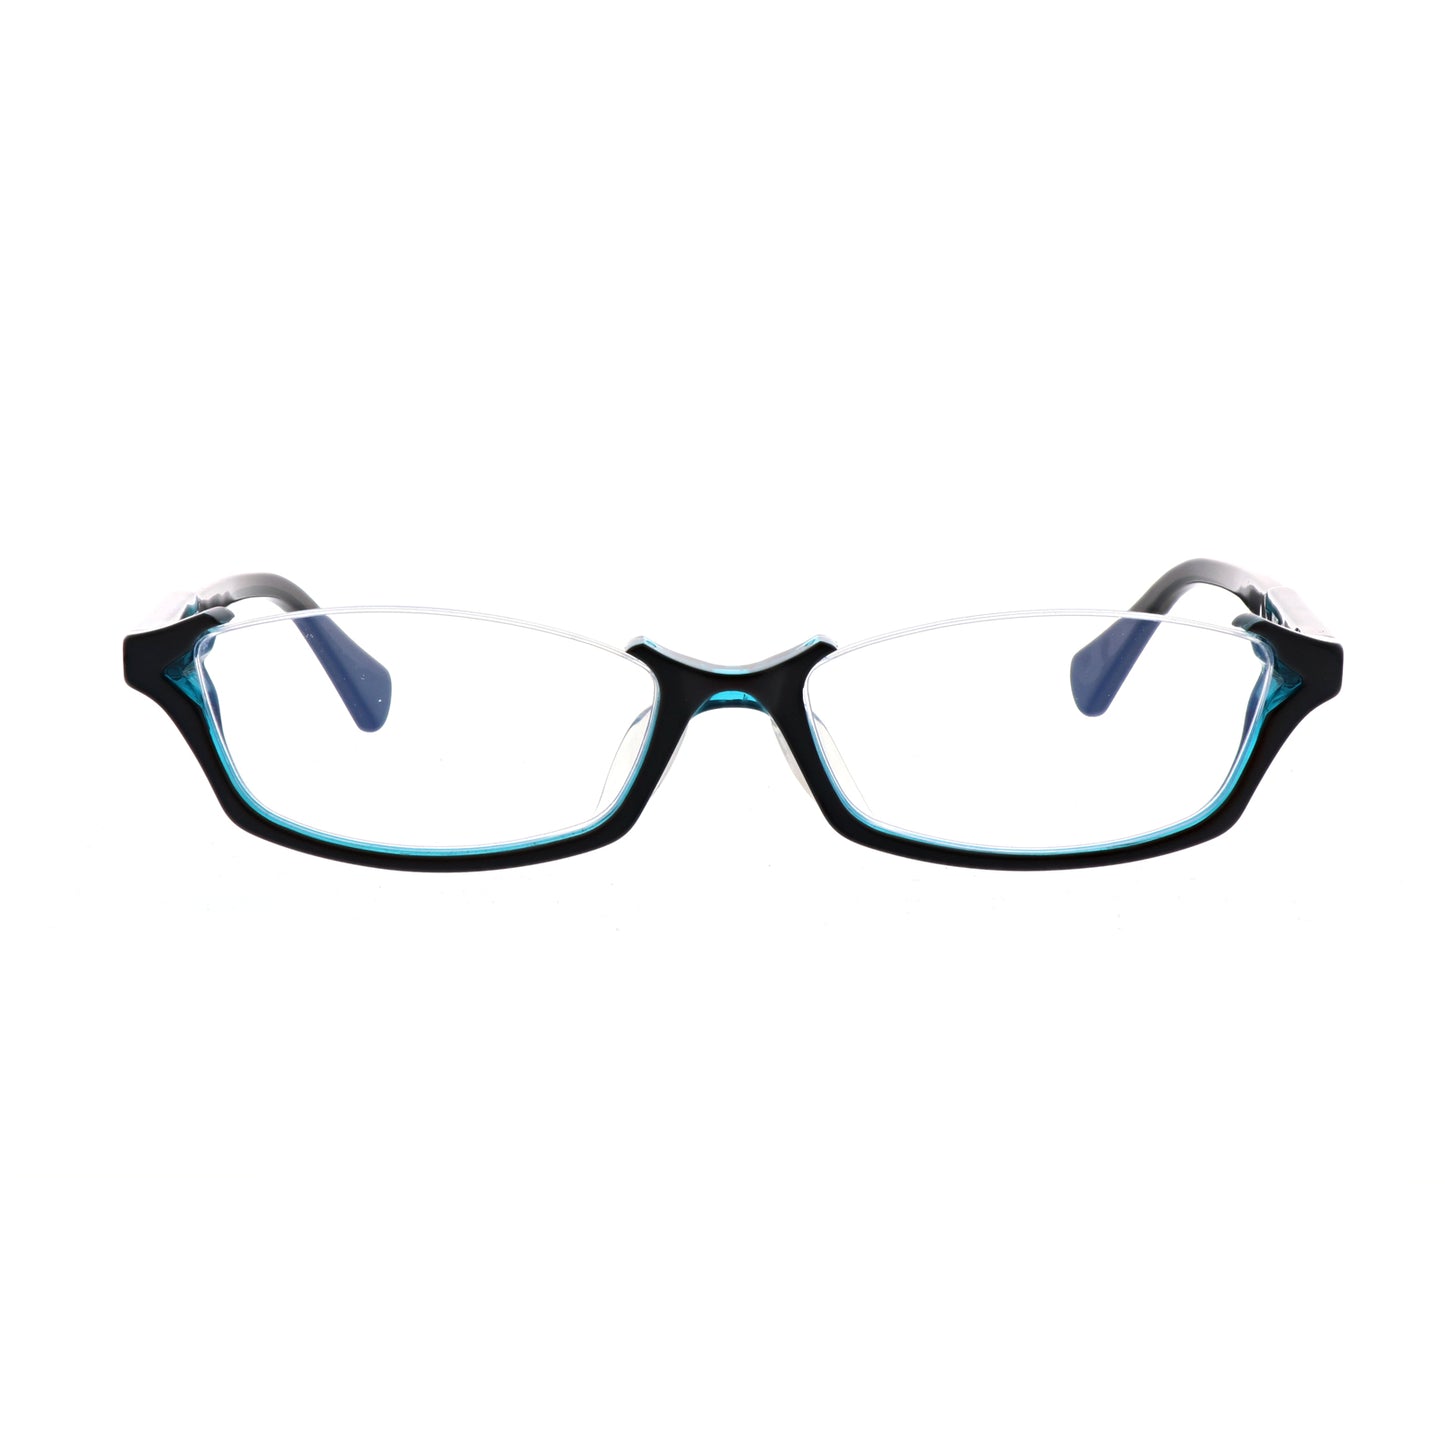 初音ミク EYEWEAR COLLECTION MIKU-007 光學眼鏡 附送特超薄非球面度數鏡片（任何度數）